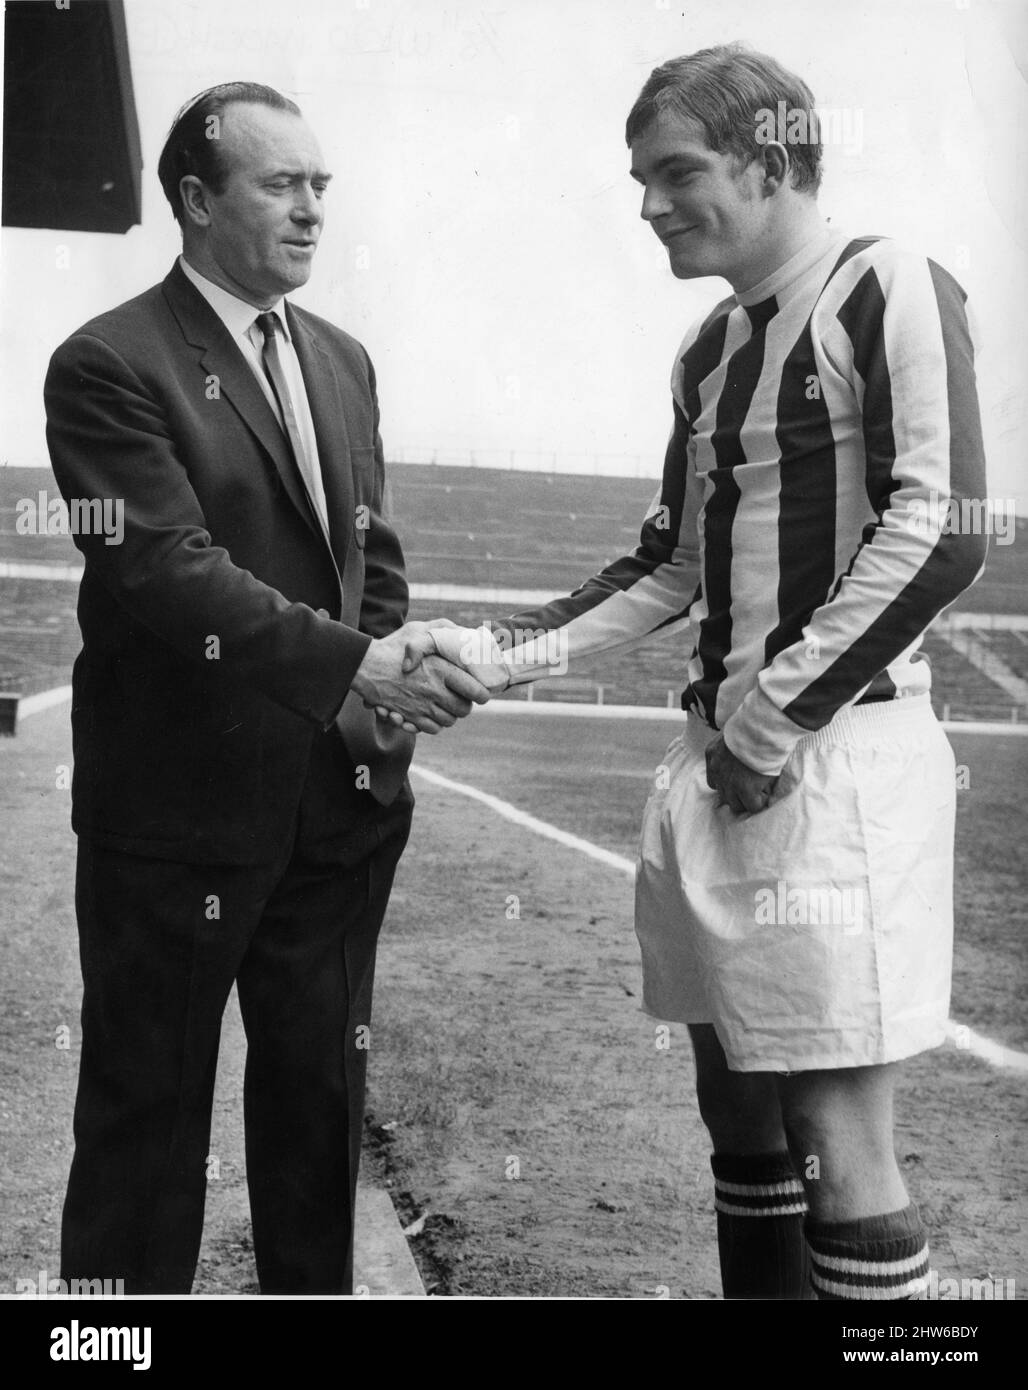 Tony Waddington Stoke City Manager shakes hands with new signing John Mahoney 9th September 1967. *** Local Caption *** Football Player Stock Photo